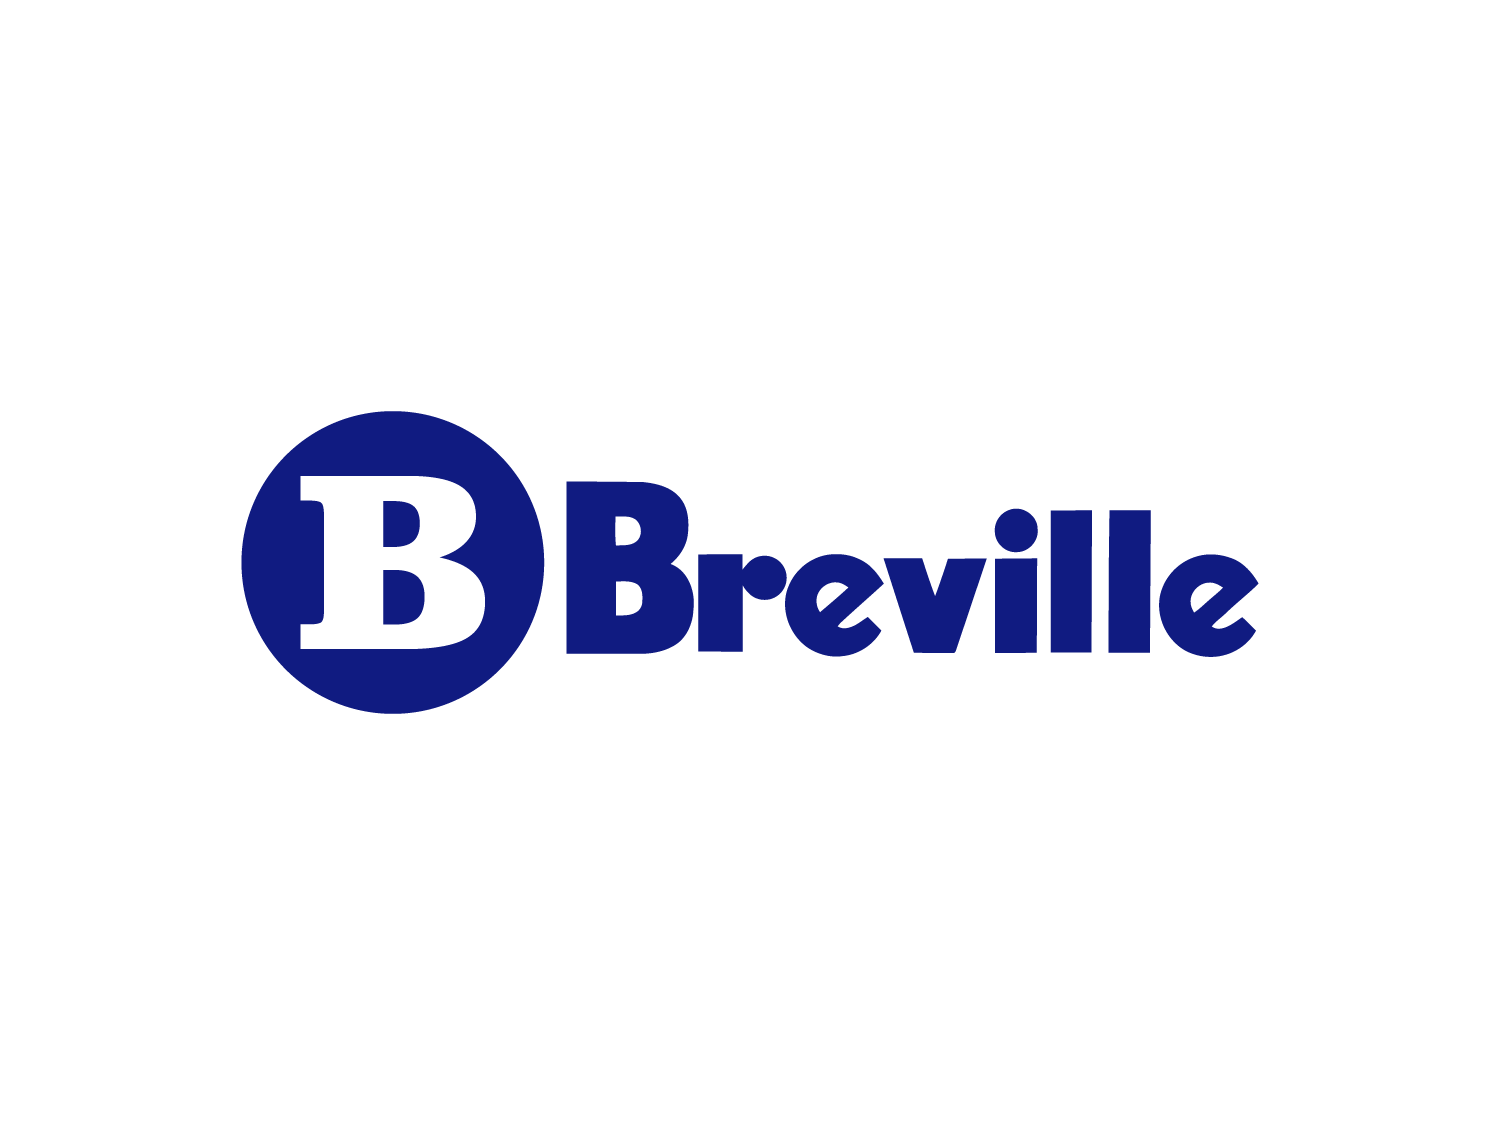 Breville-old-logo01-1500×1125-logo-design